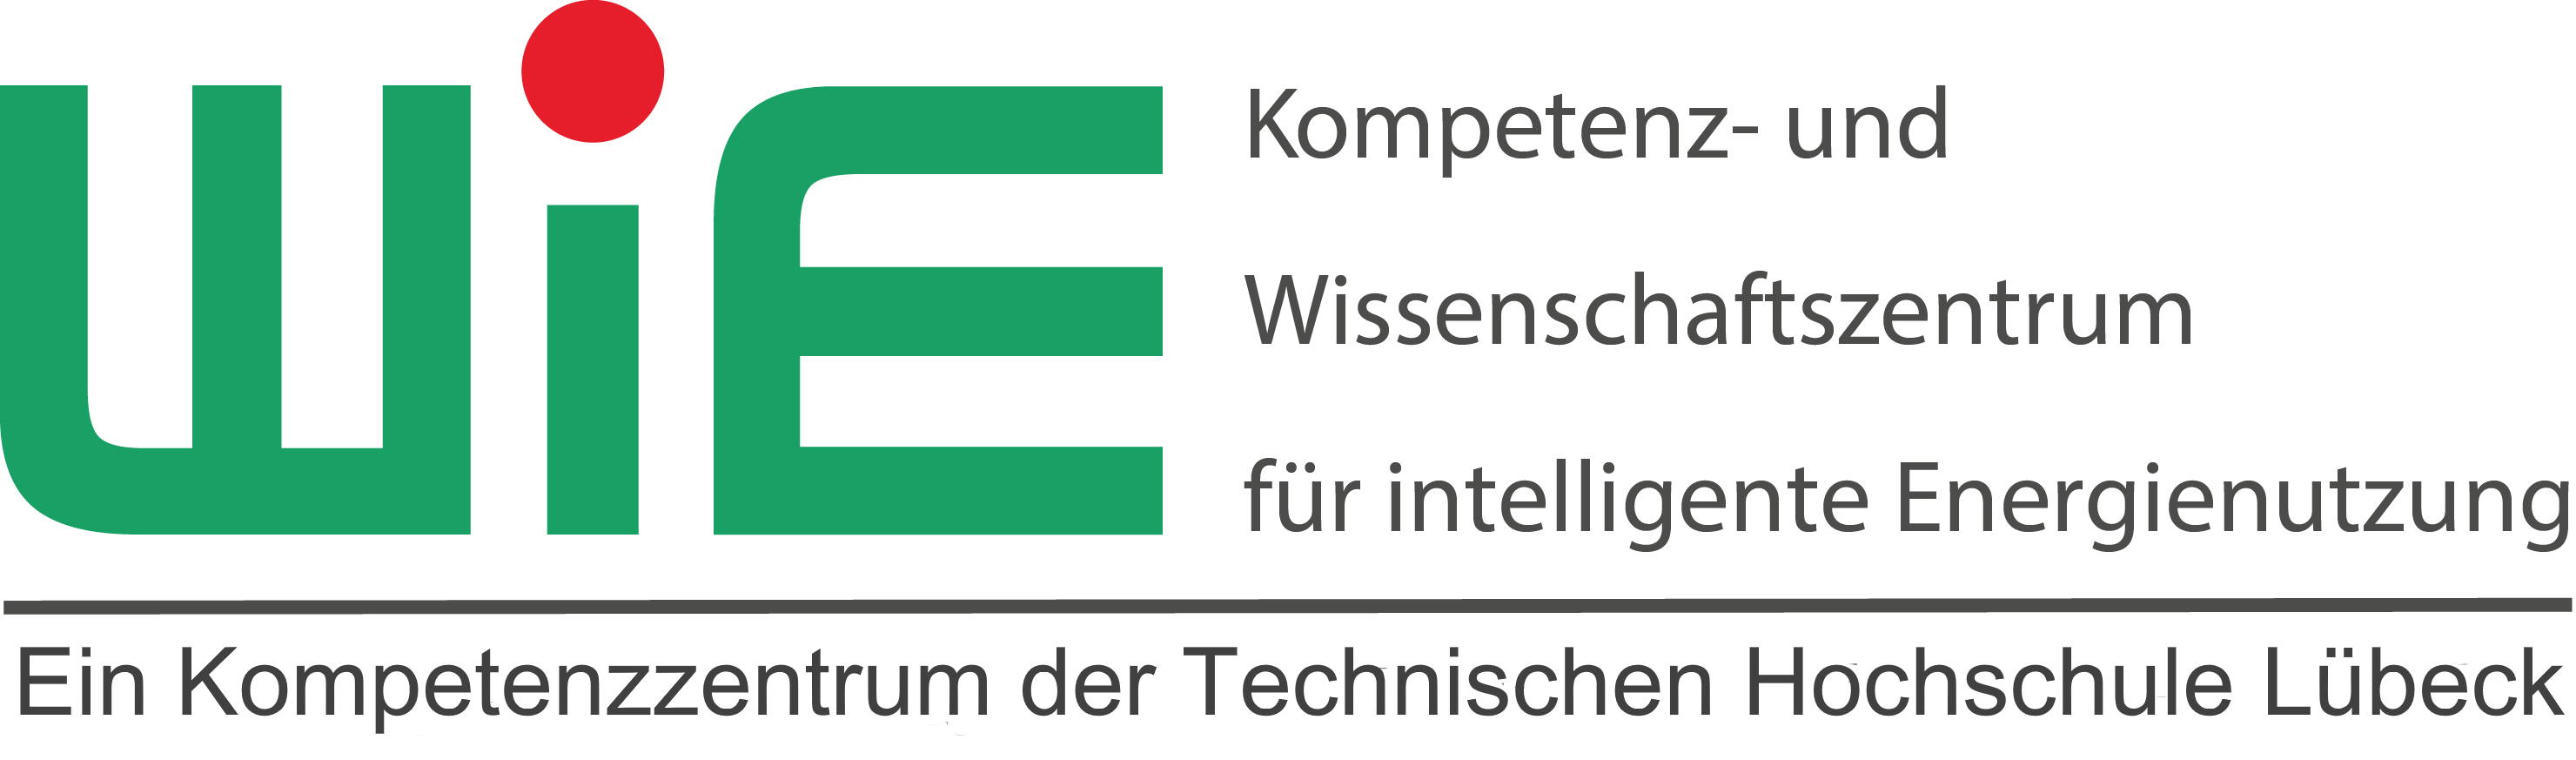 Logo-Kompetenz- und Wissenschaftszentrum für intelligente Energienutzung